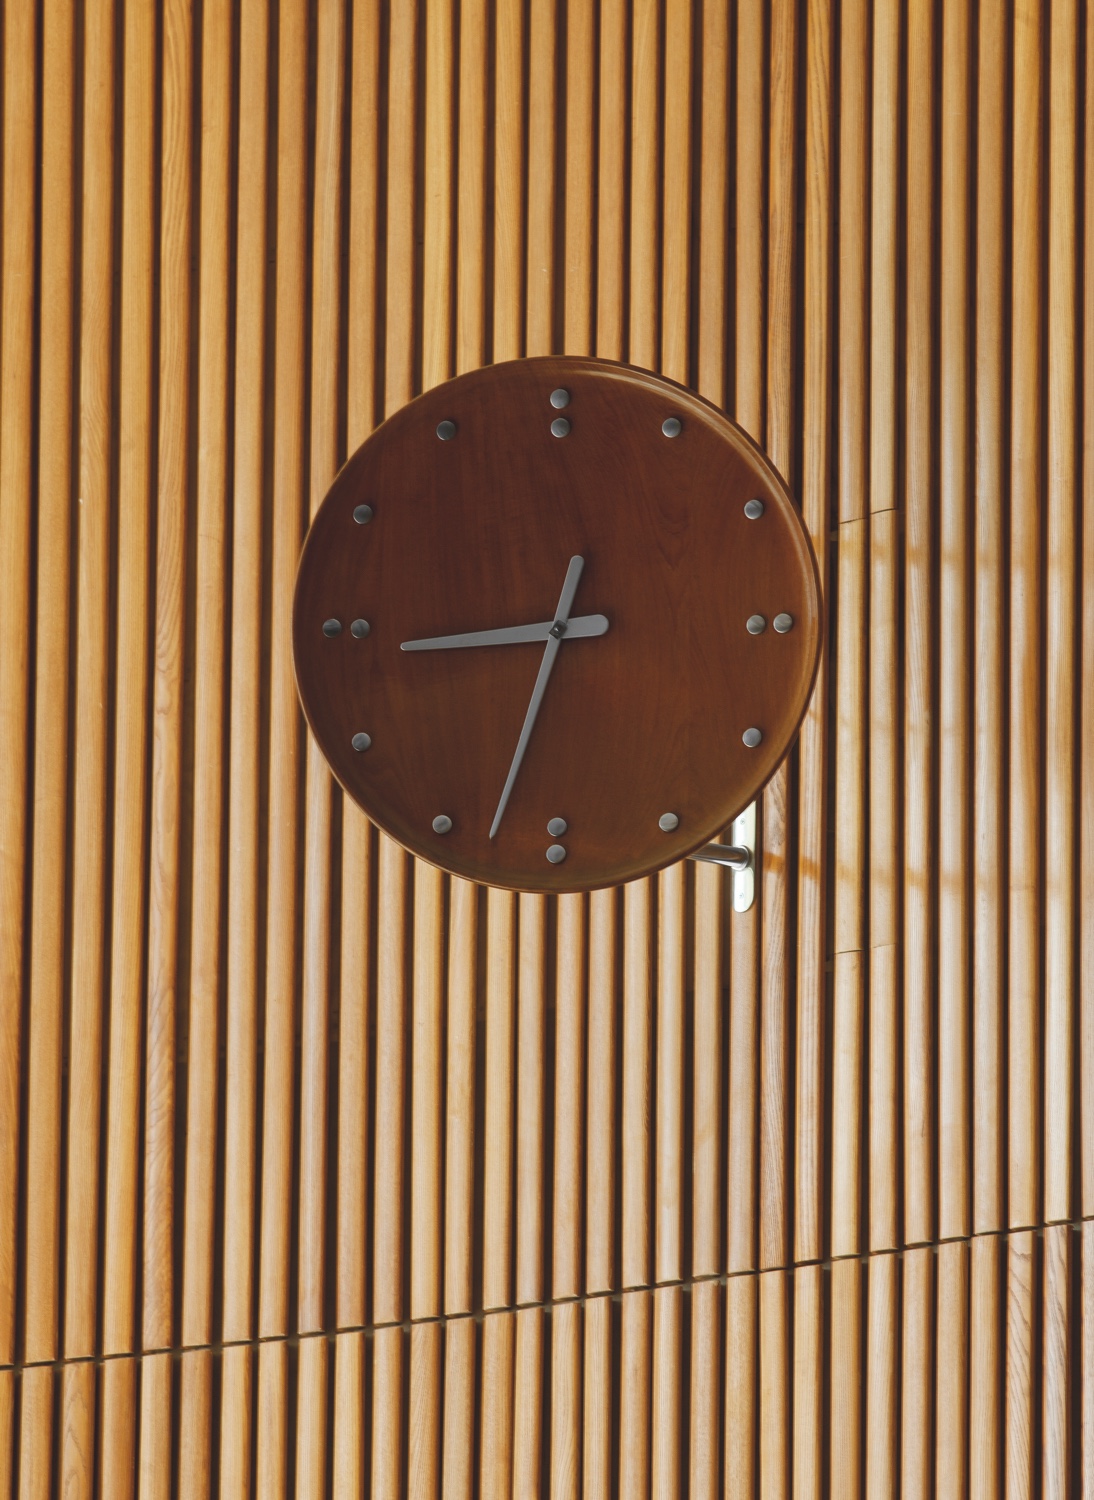 FJ Clock by Finn Juhl.